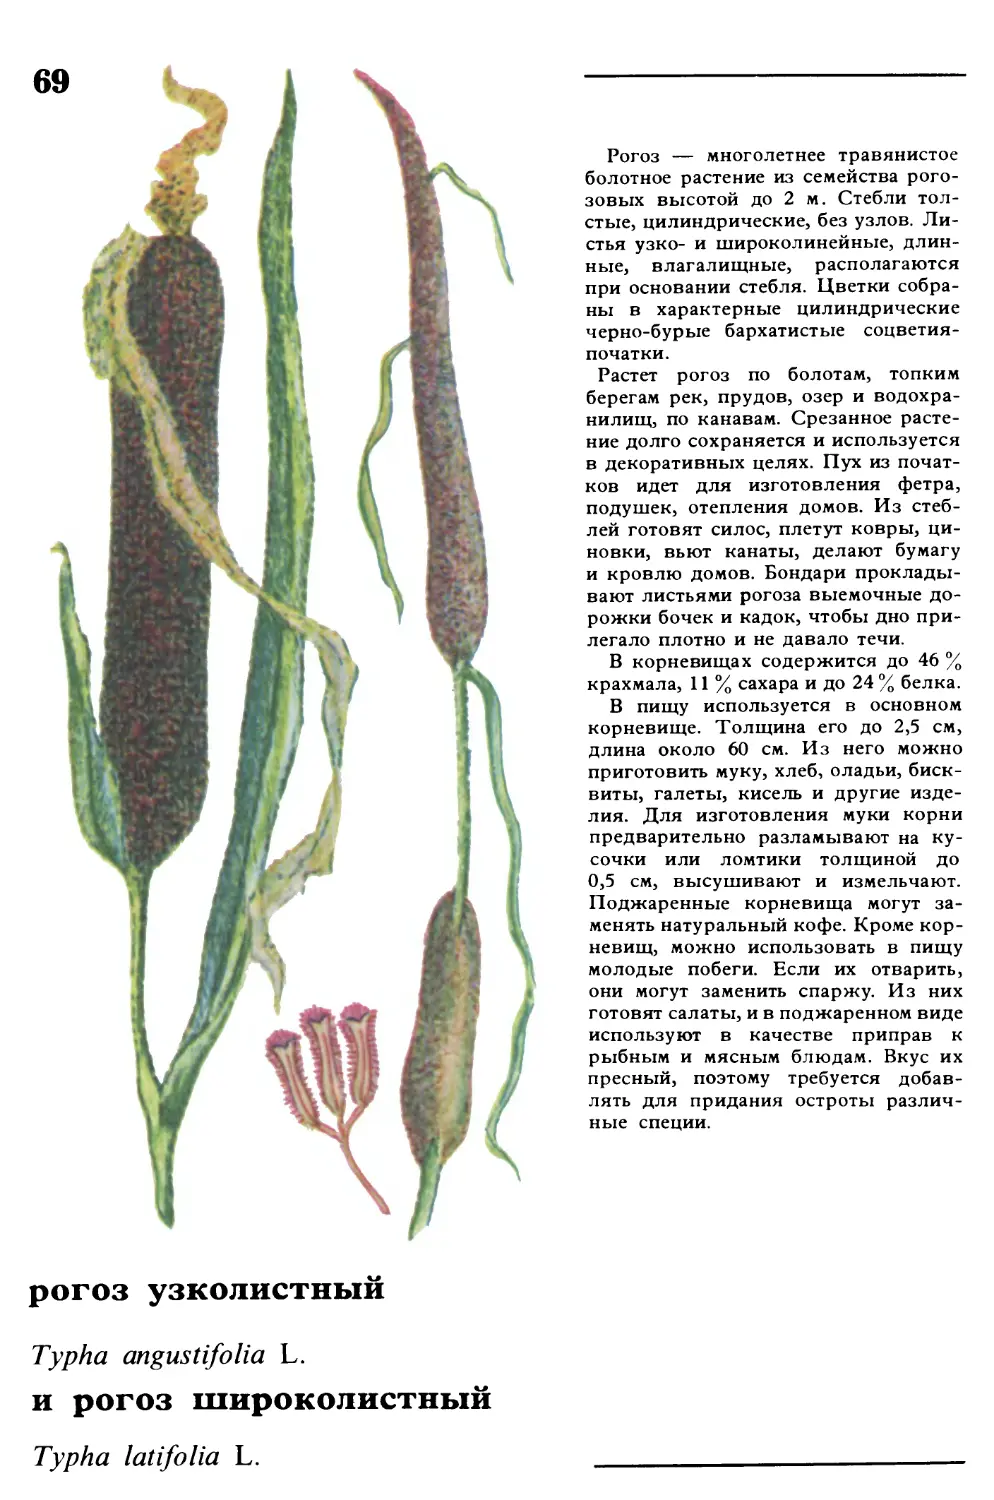 Рогоз
рогоз узколистный и рогоз широколистный
Typha angustifolia L.
Typha latifolia L.